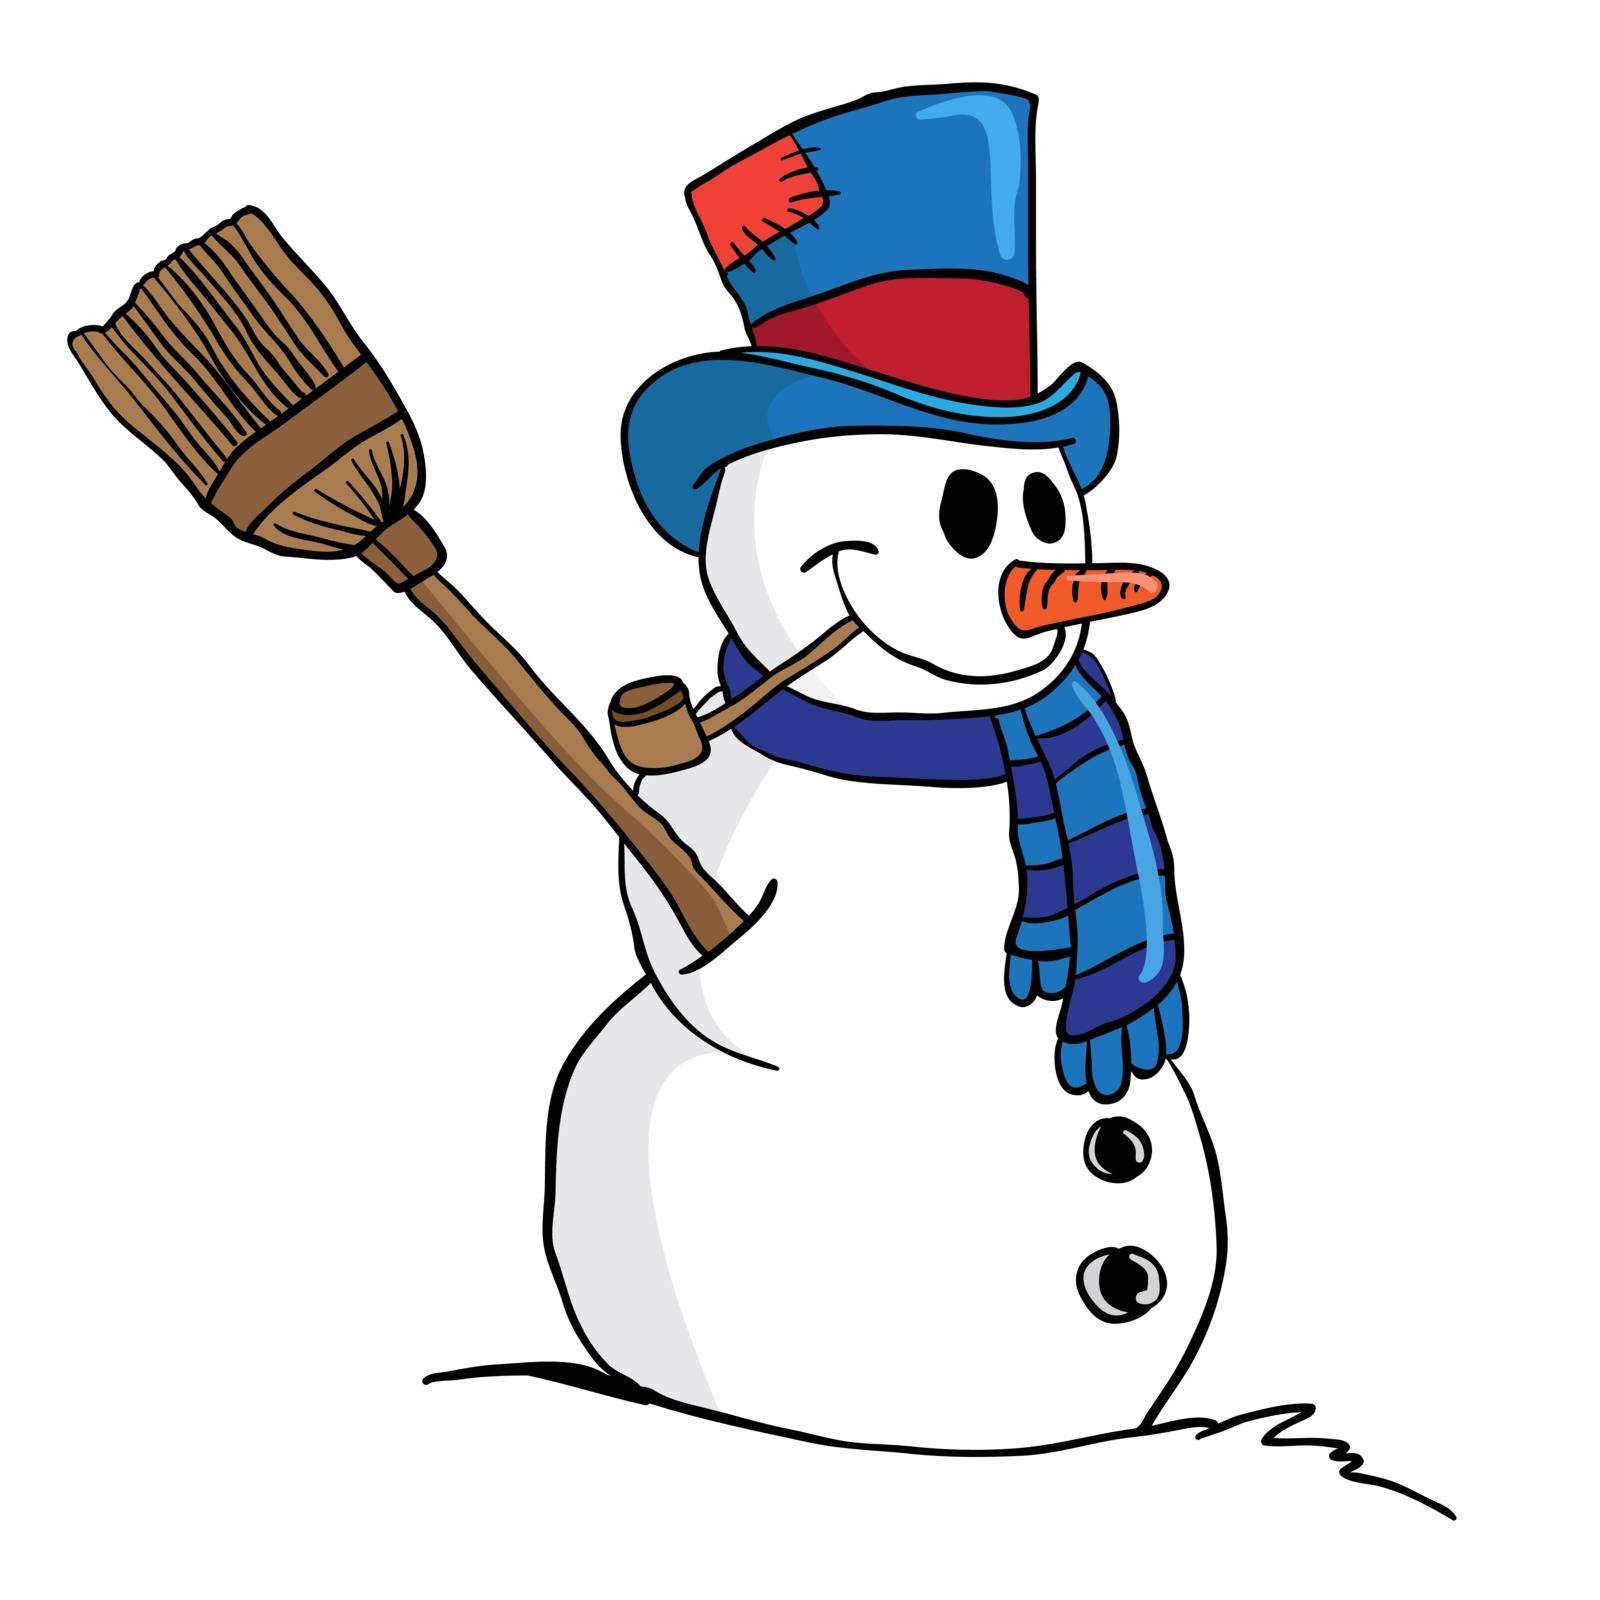 snowman cartoon illustration isolated on white